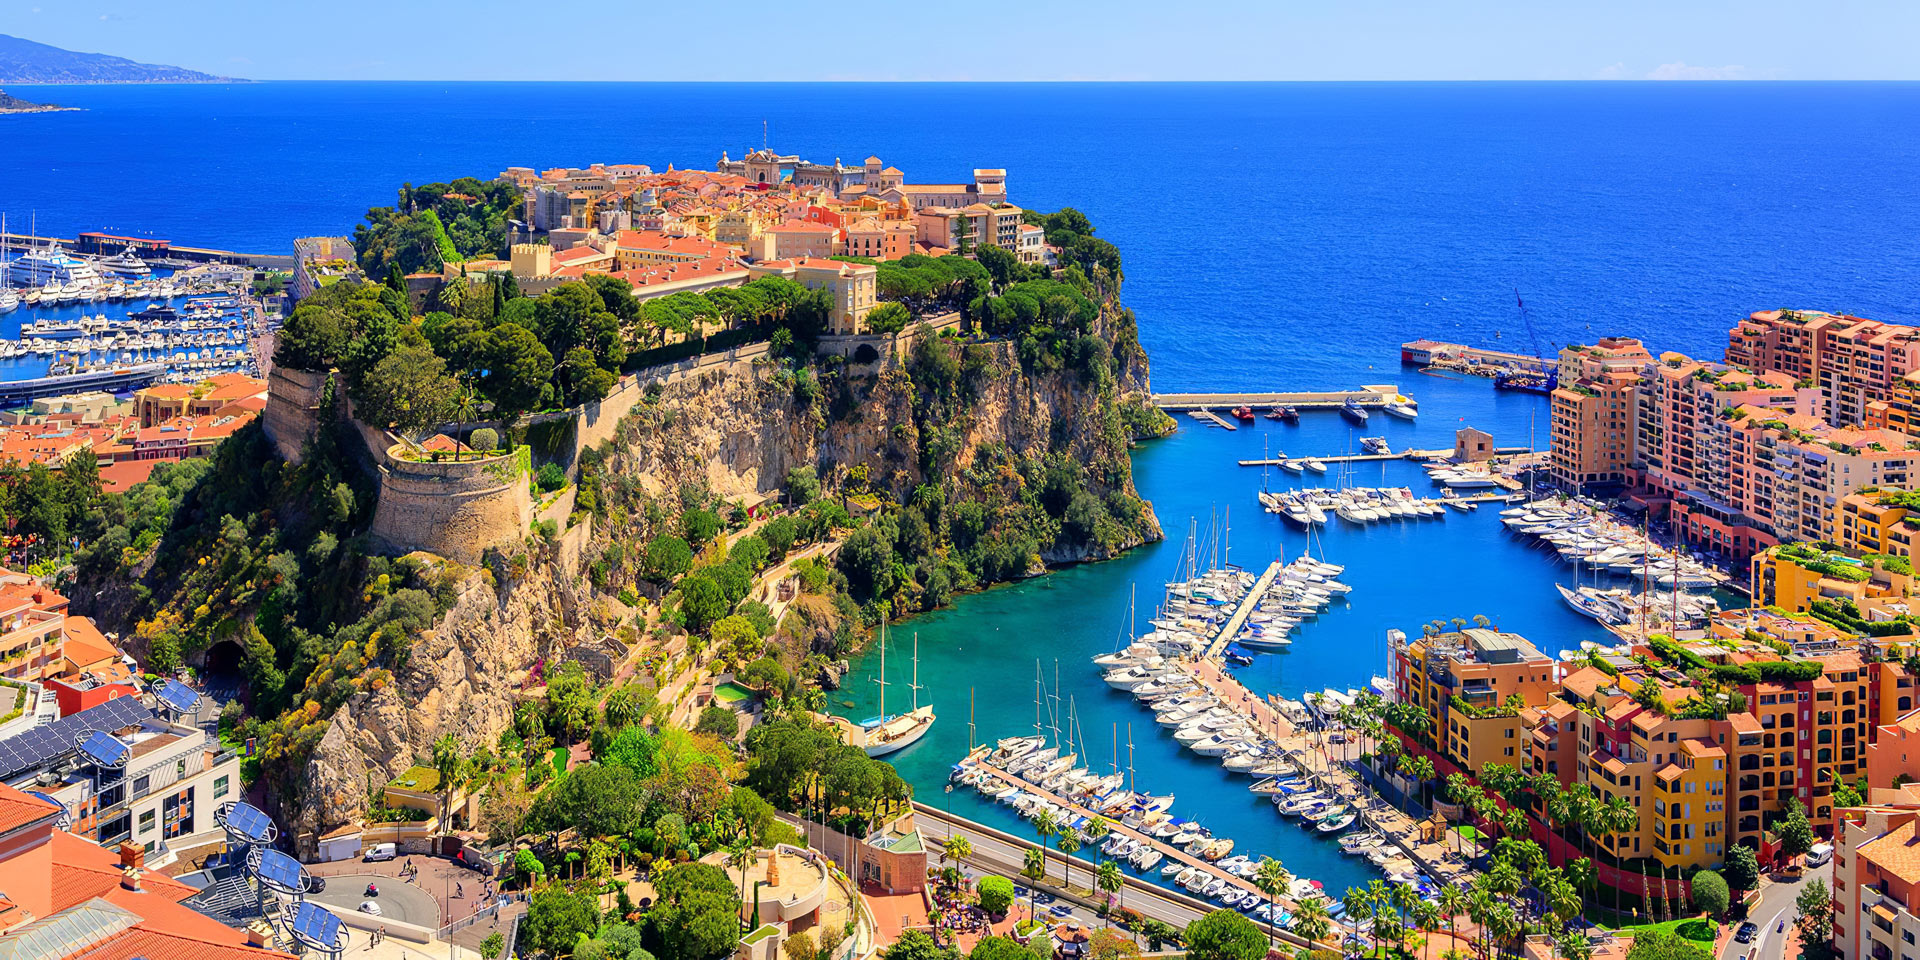 Visiter côte d'Azur: Top choses à faire et à voir | Voyage Tips